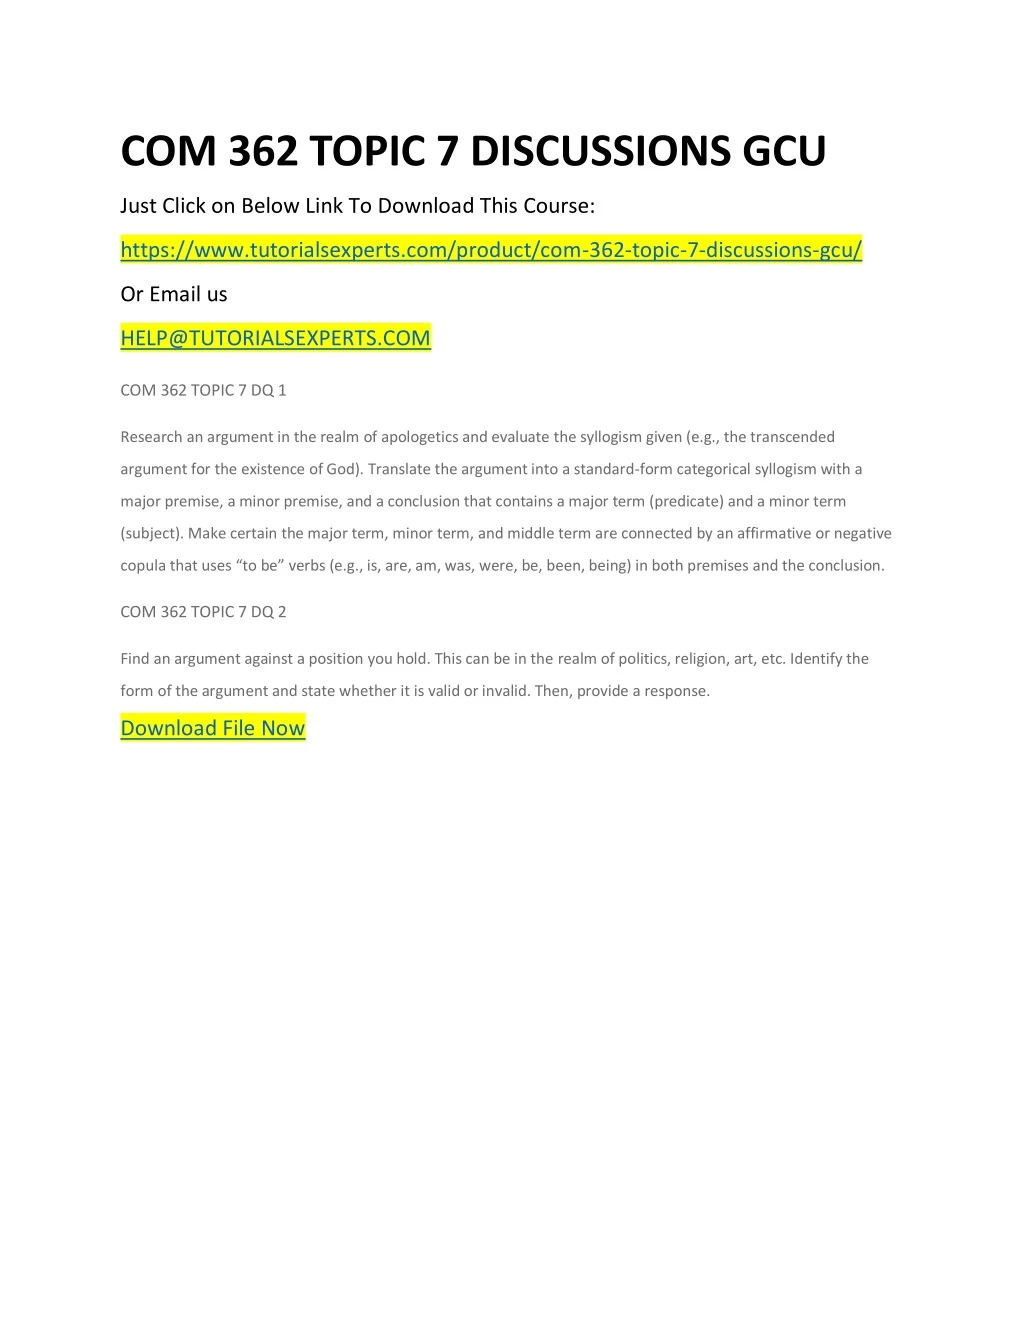 com 362 topic 7 discussions gcu